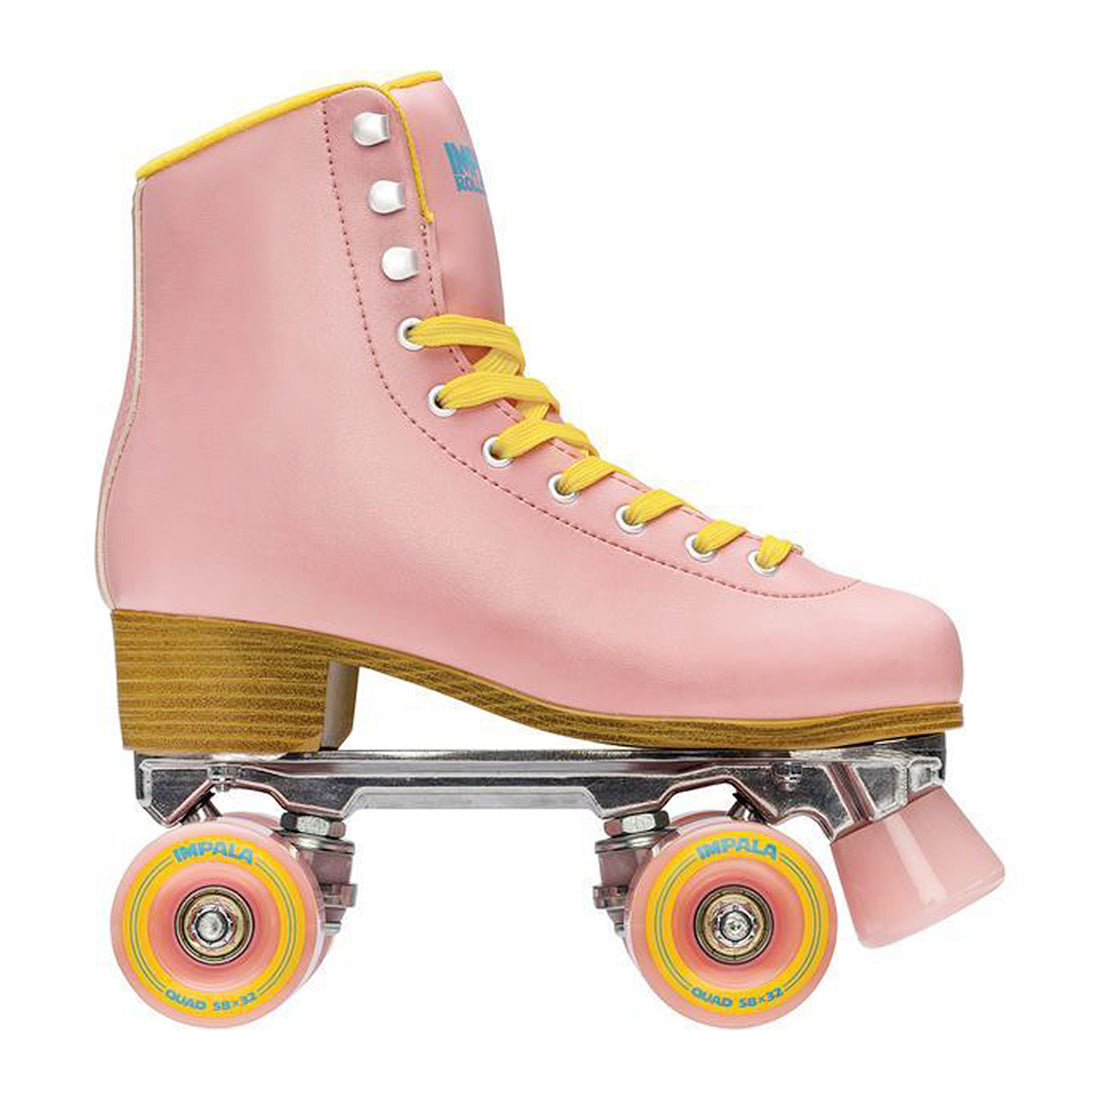 Impala Sidewalk - Pink/Yellow Roller Skates